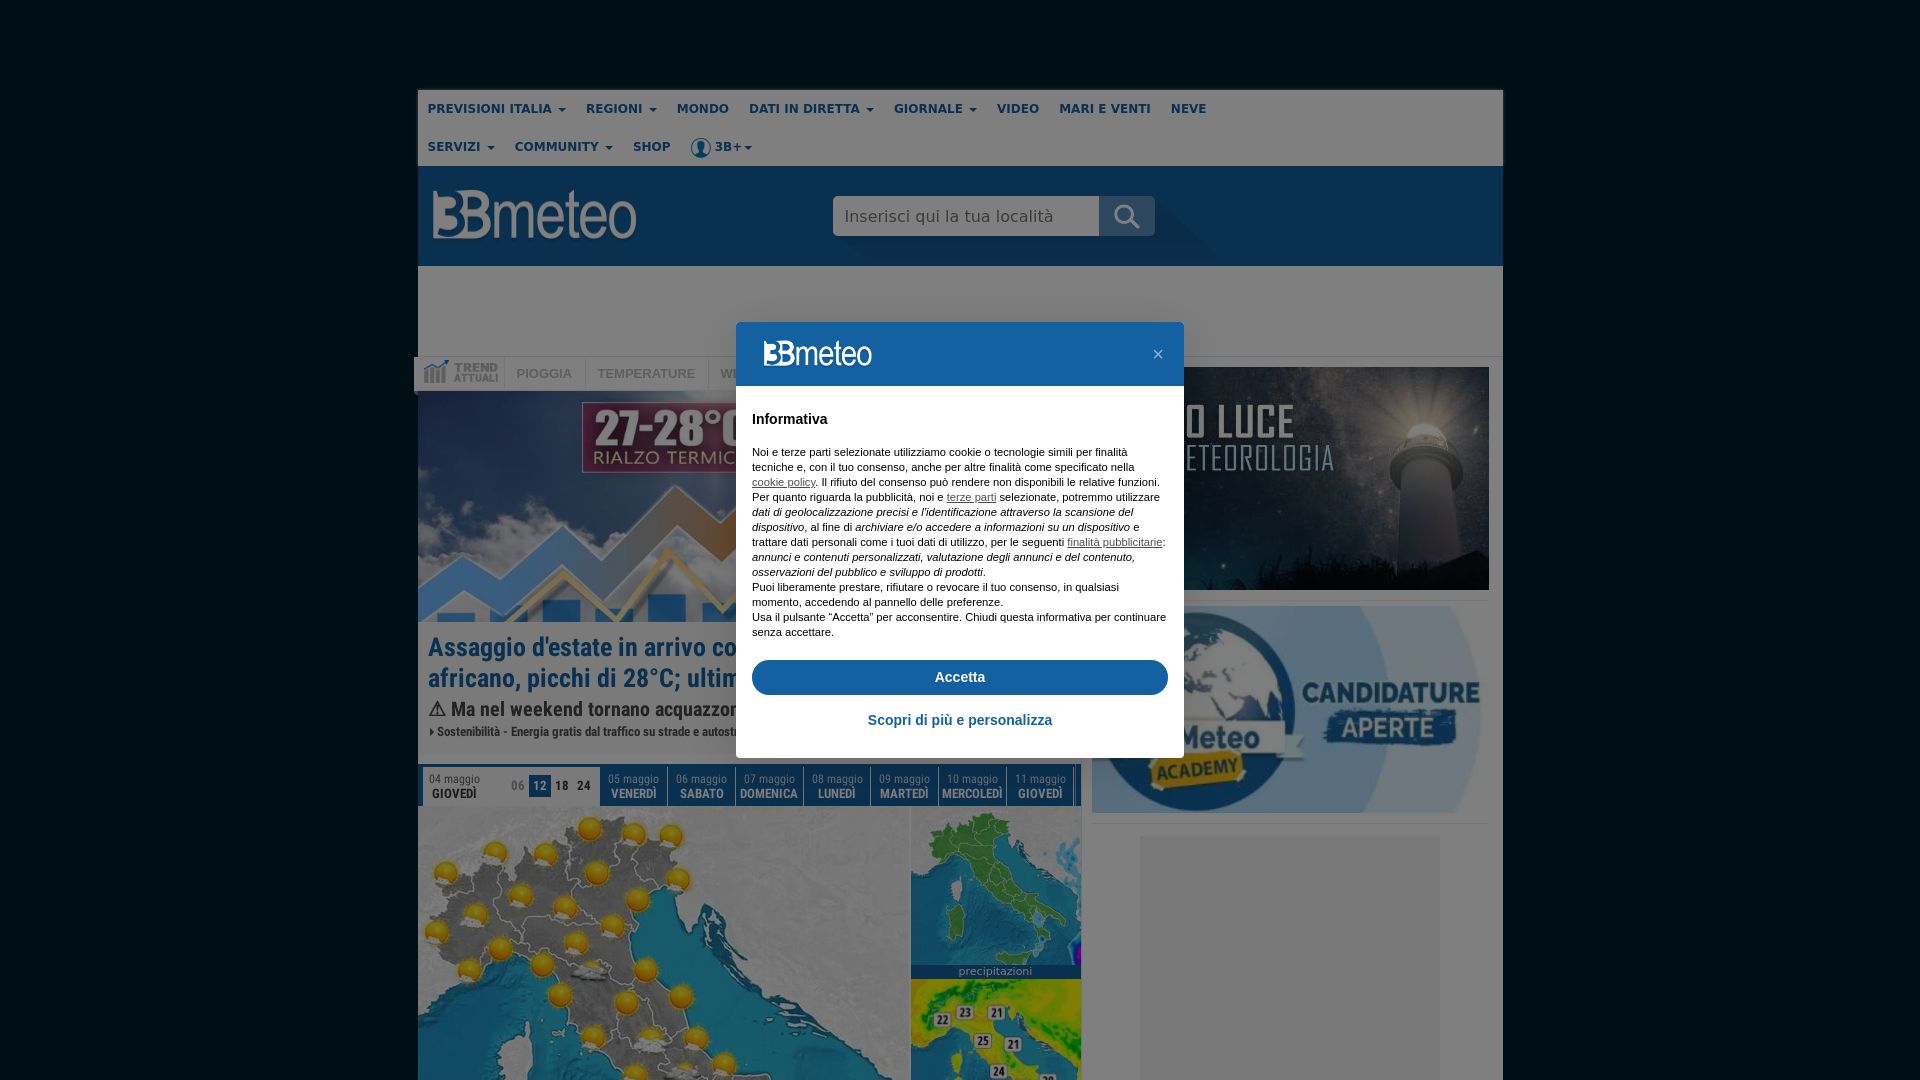 Website status 3bmeteo.com is   ONLINE